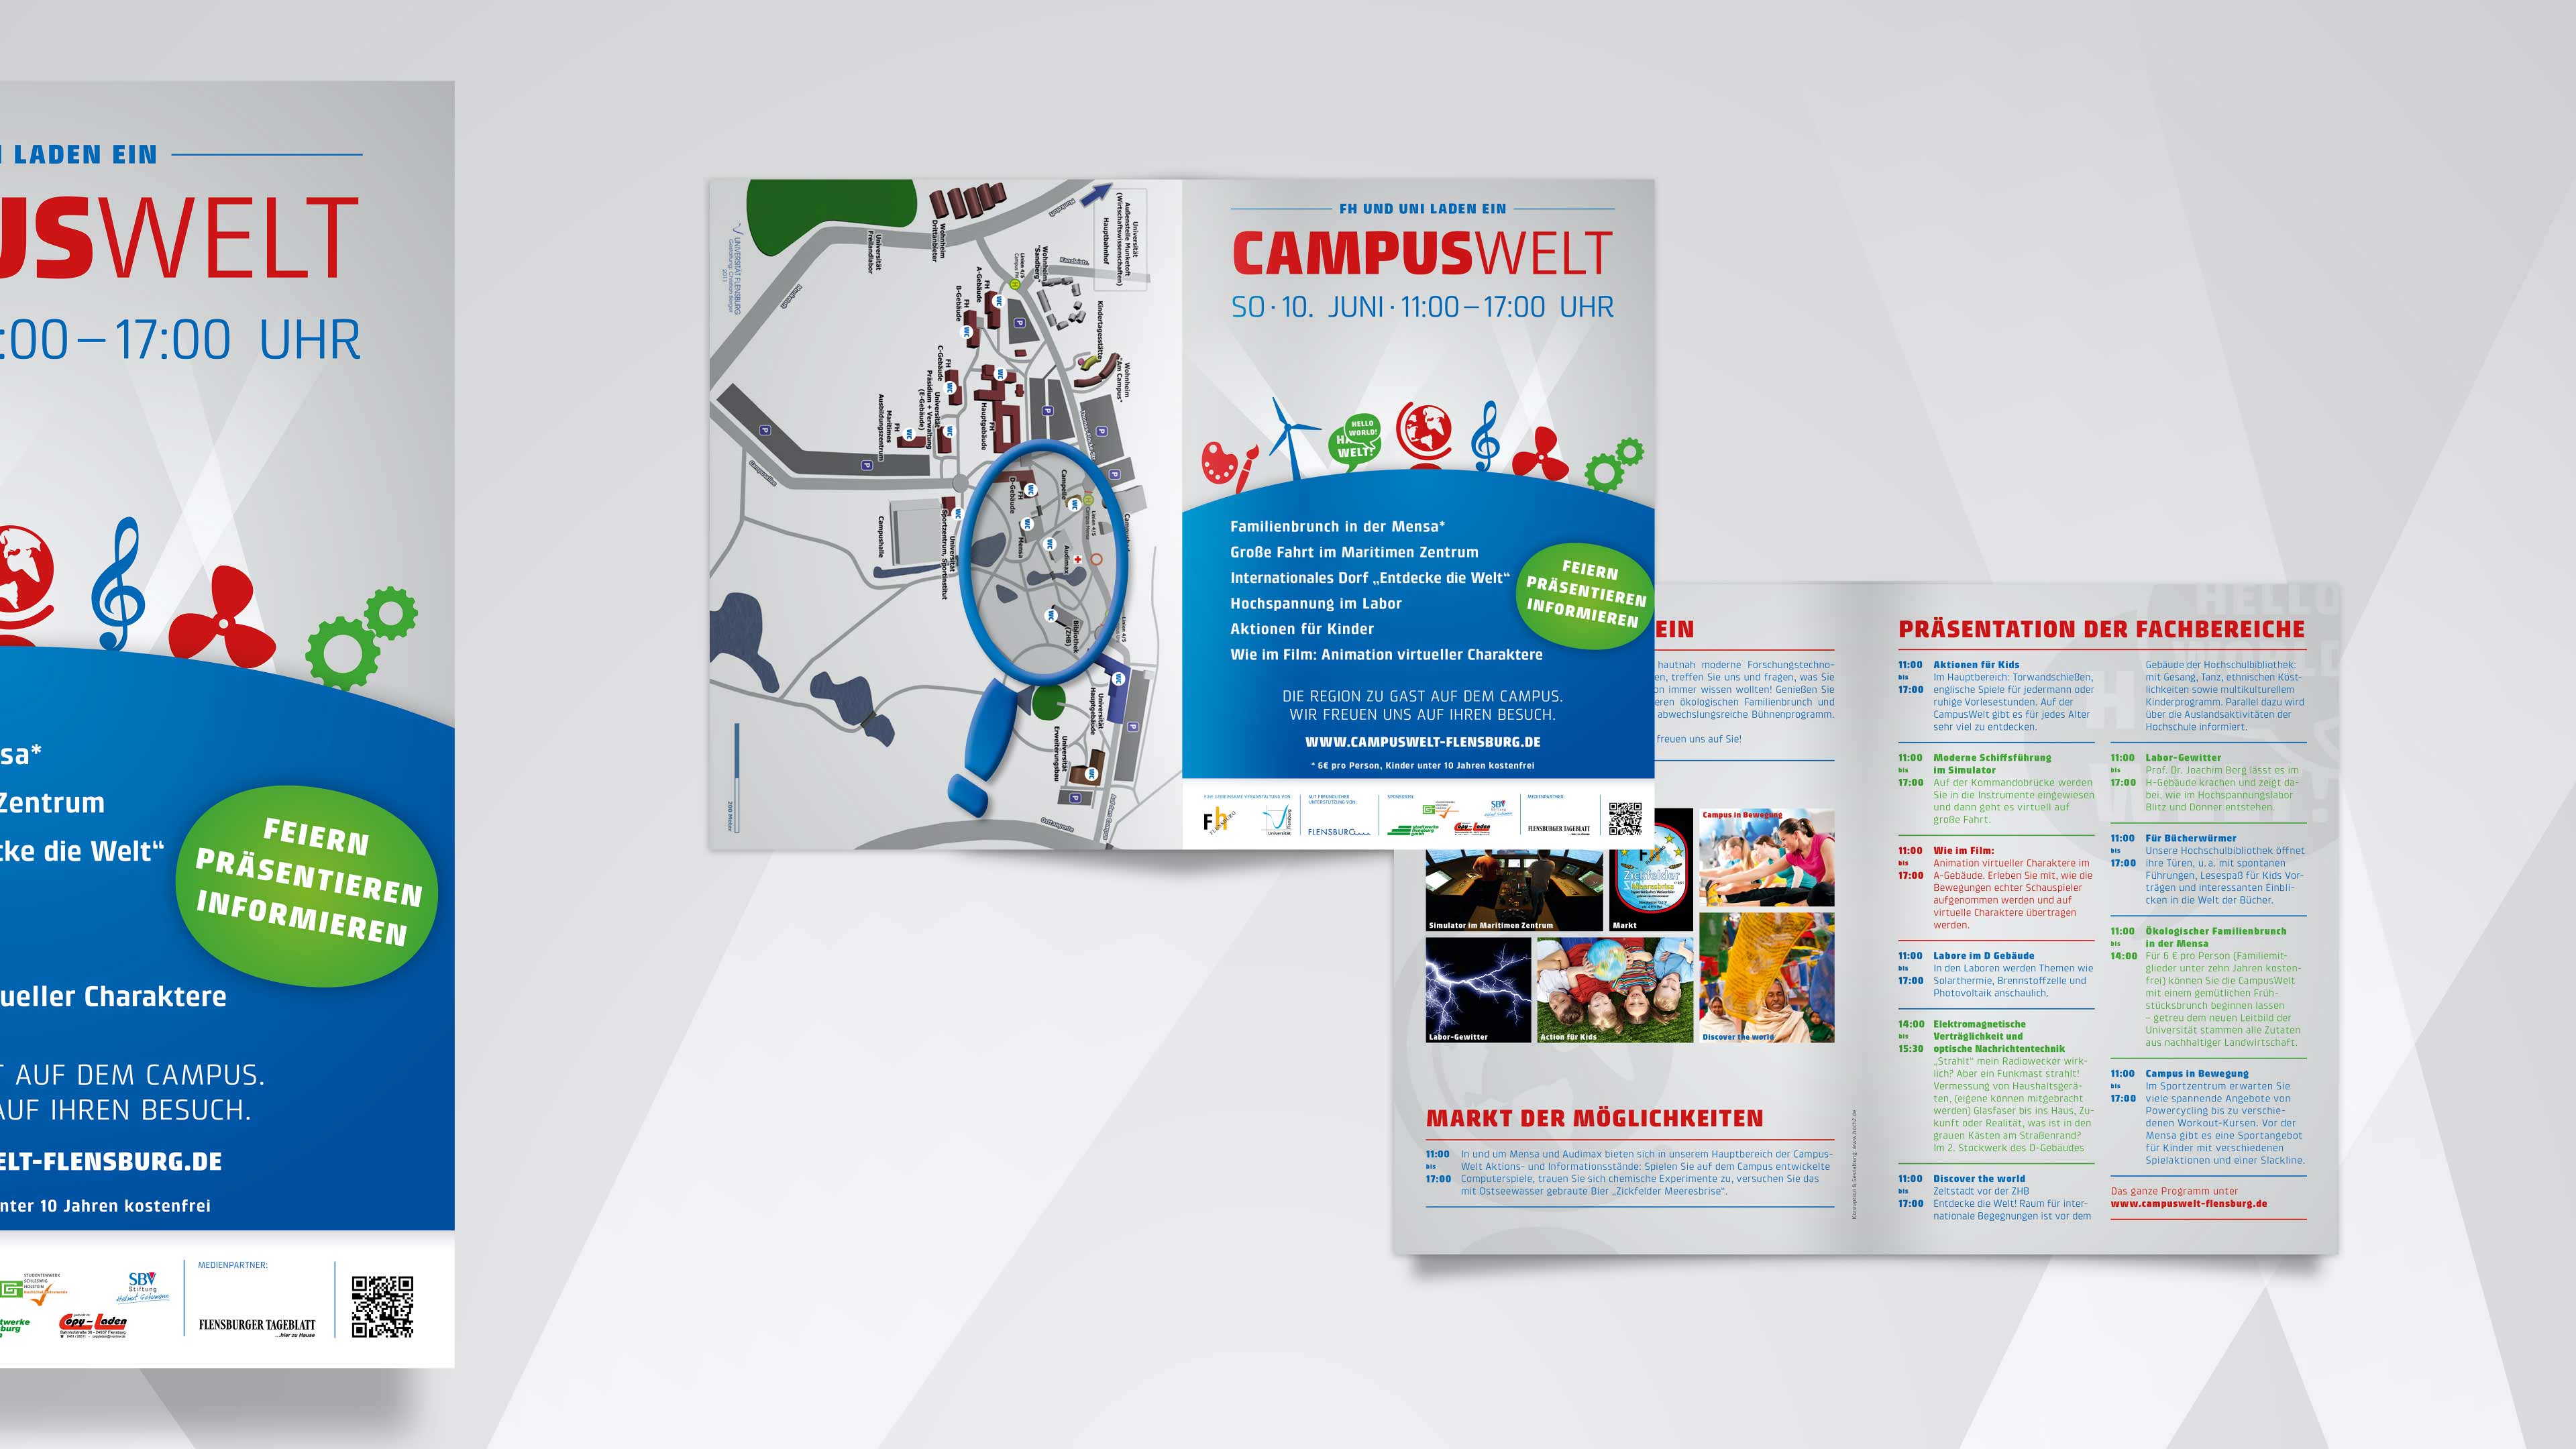 Collage des Flyers "Campuswelt" mit blauer Grafik und Infos